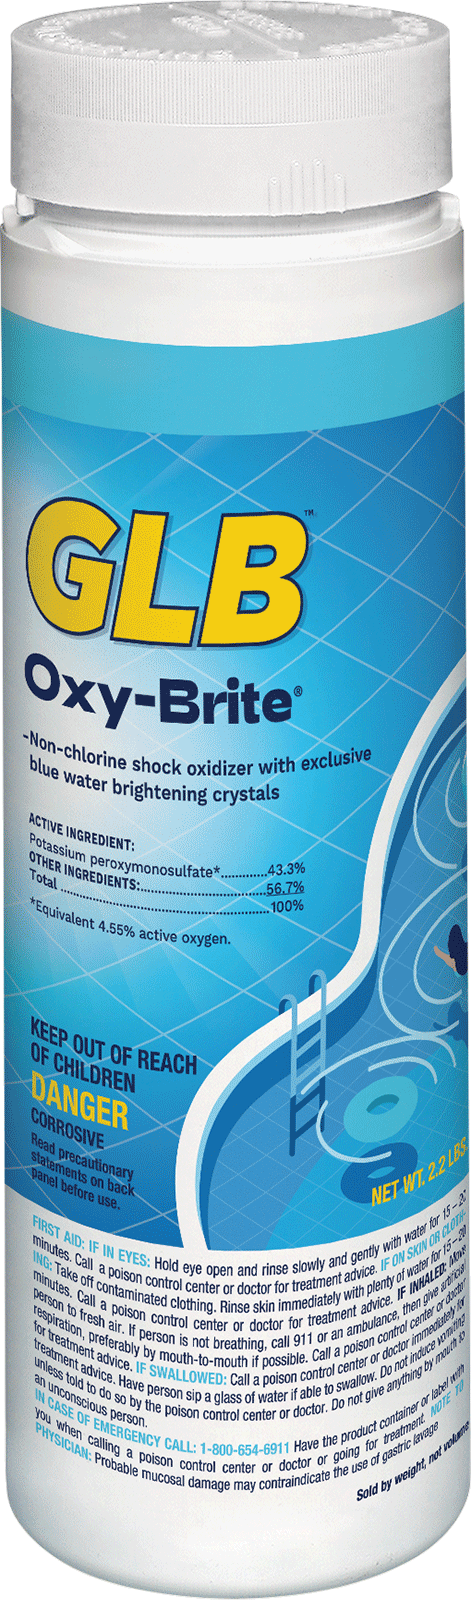 71420 Oxy-Brite 2 X 20 Lb Pail/Cs - GLB